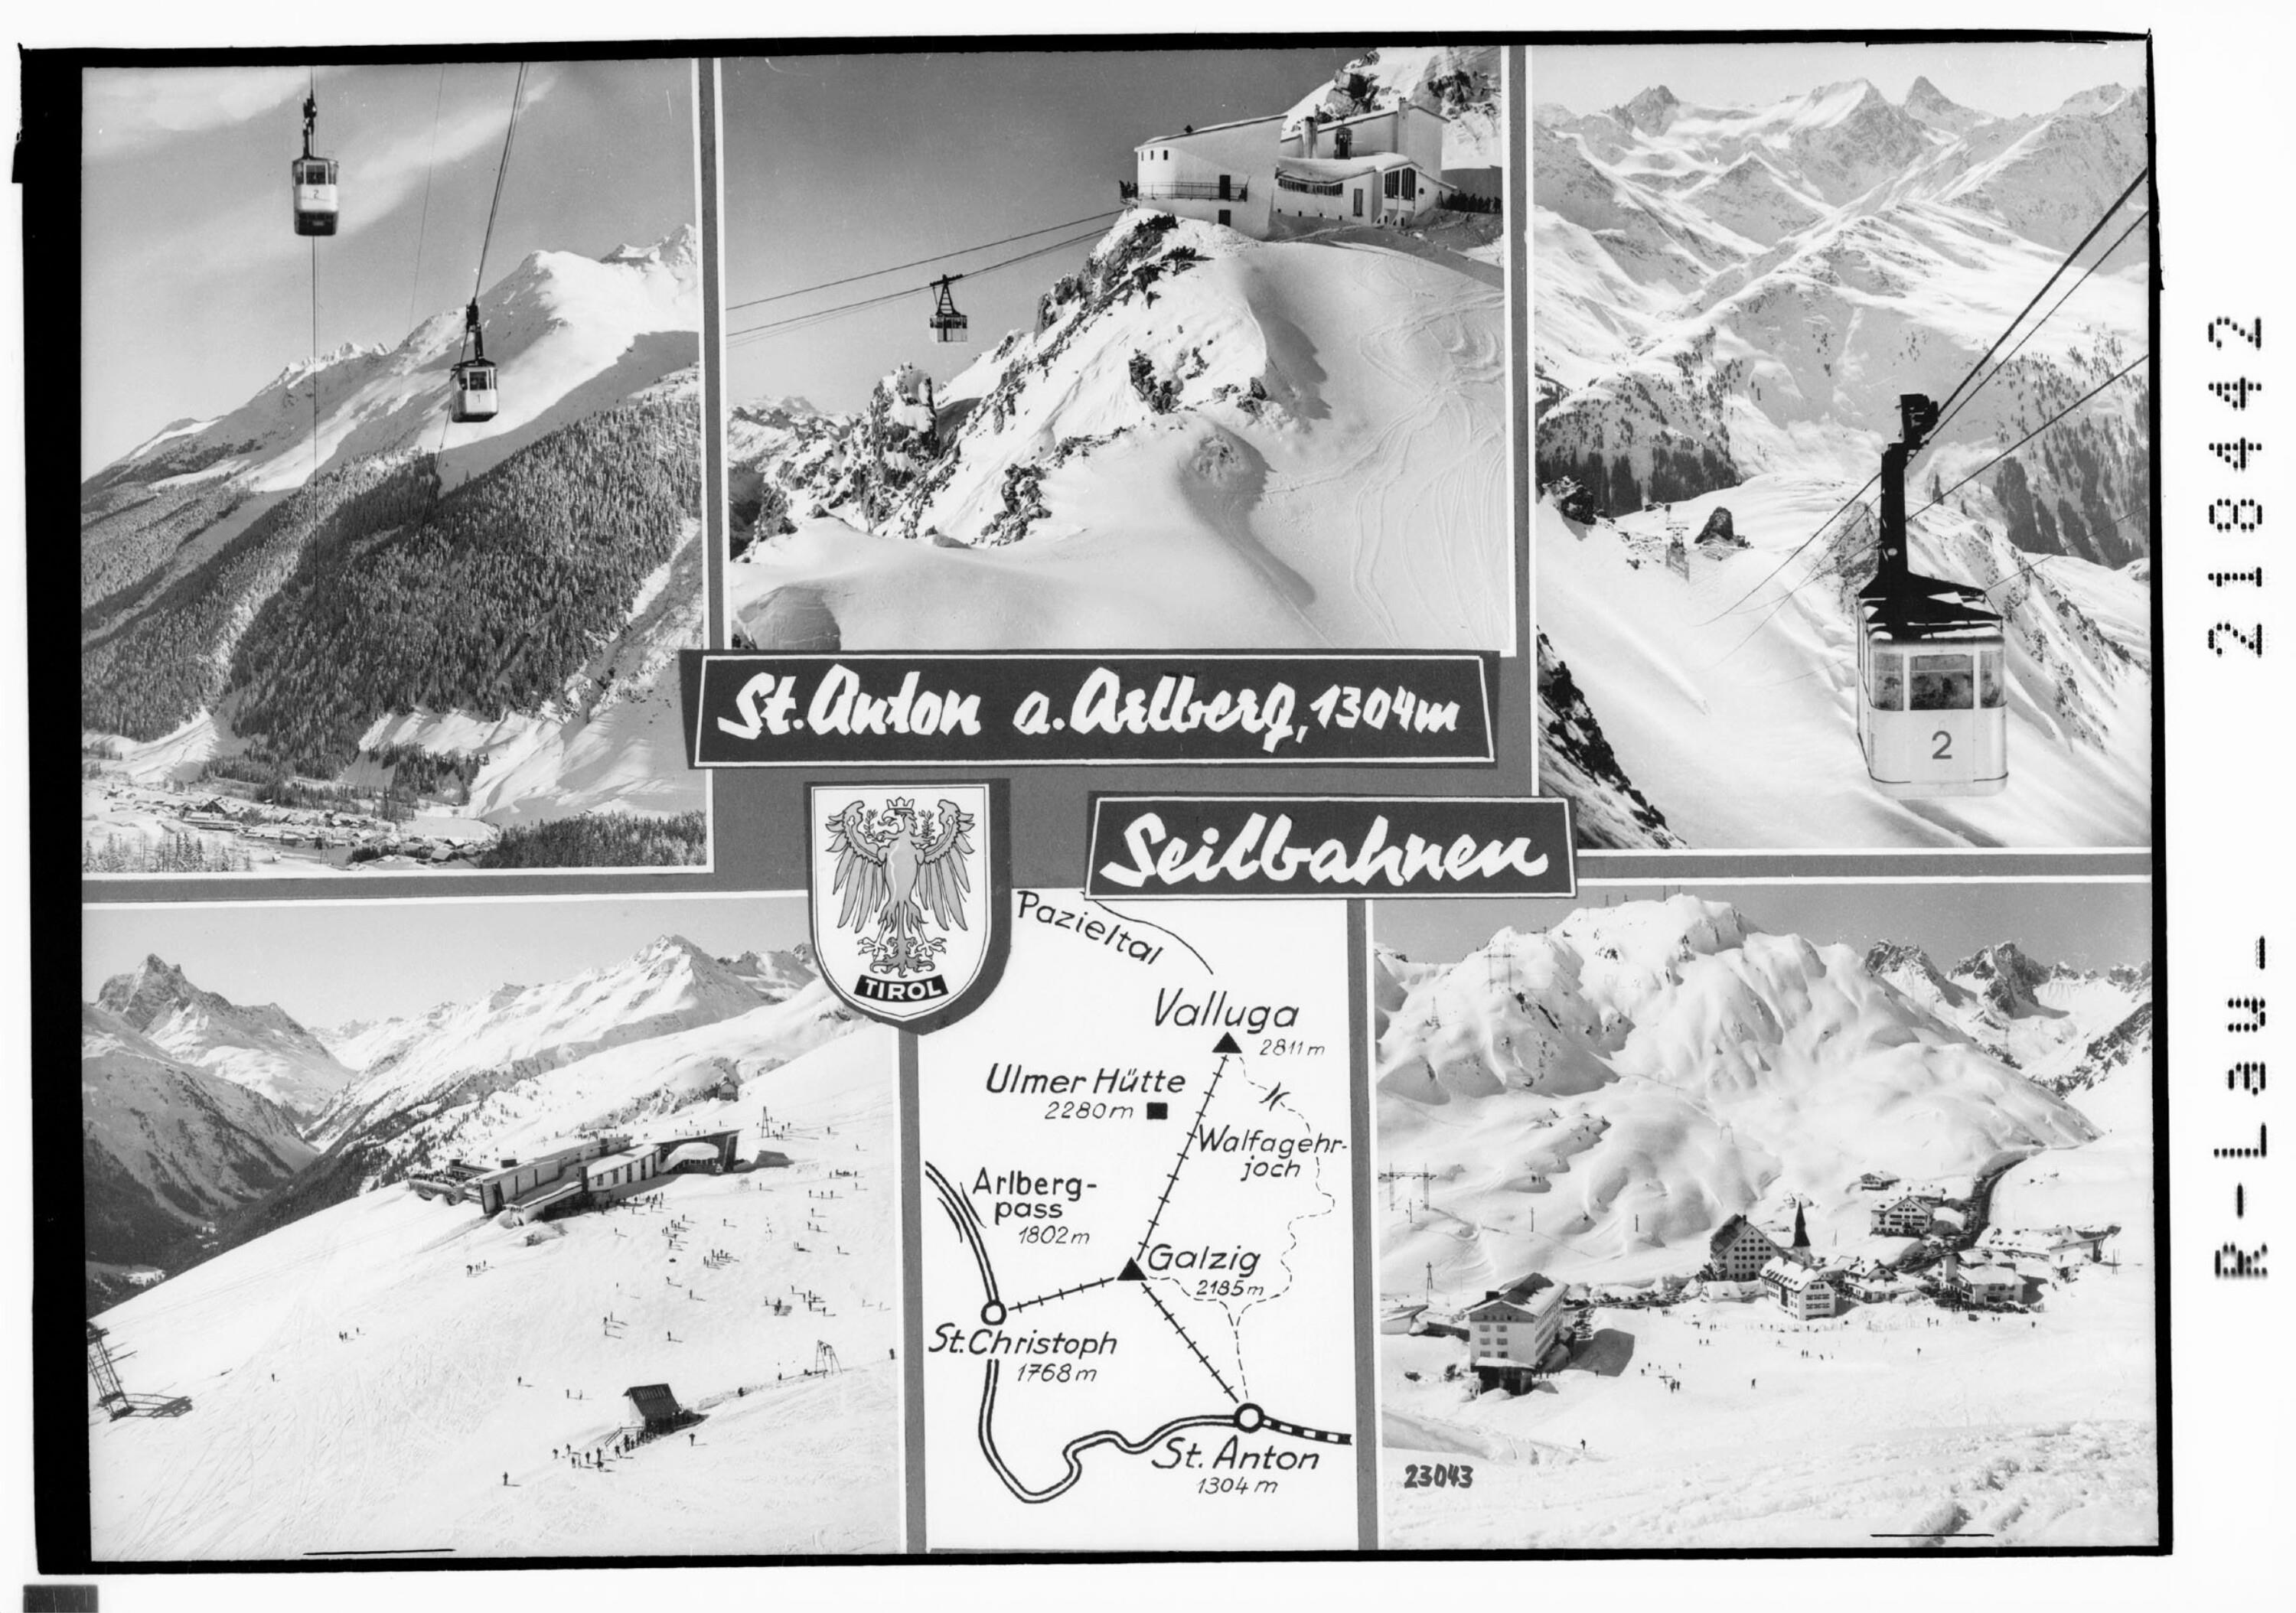 St.Anton am Arlberg 1304 m Seilbahnen></div>


    <hr>
    <div class=